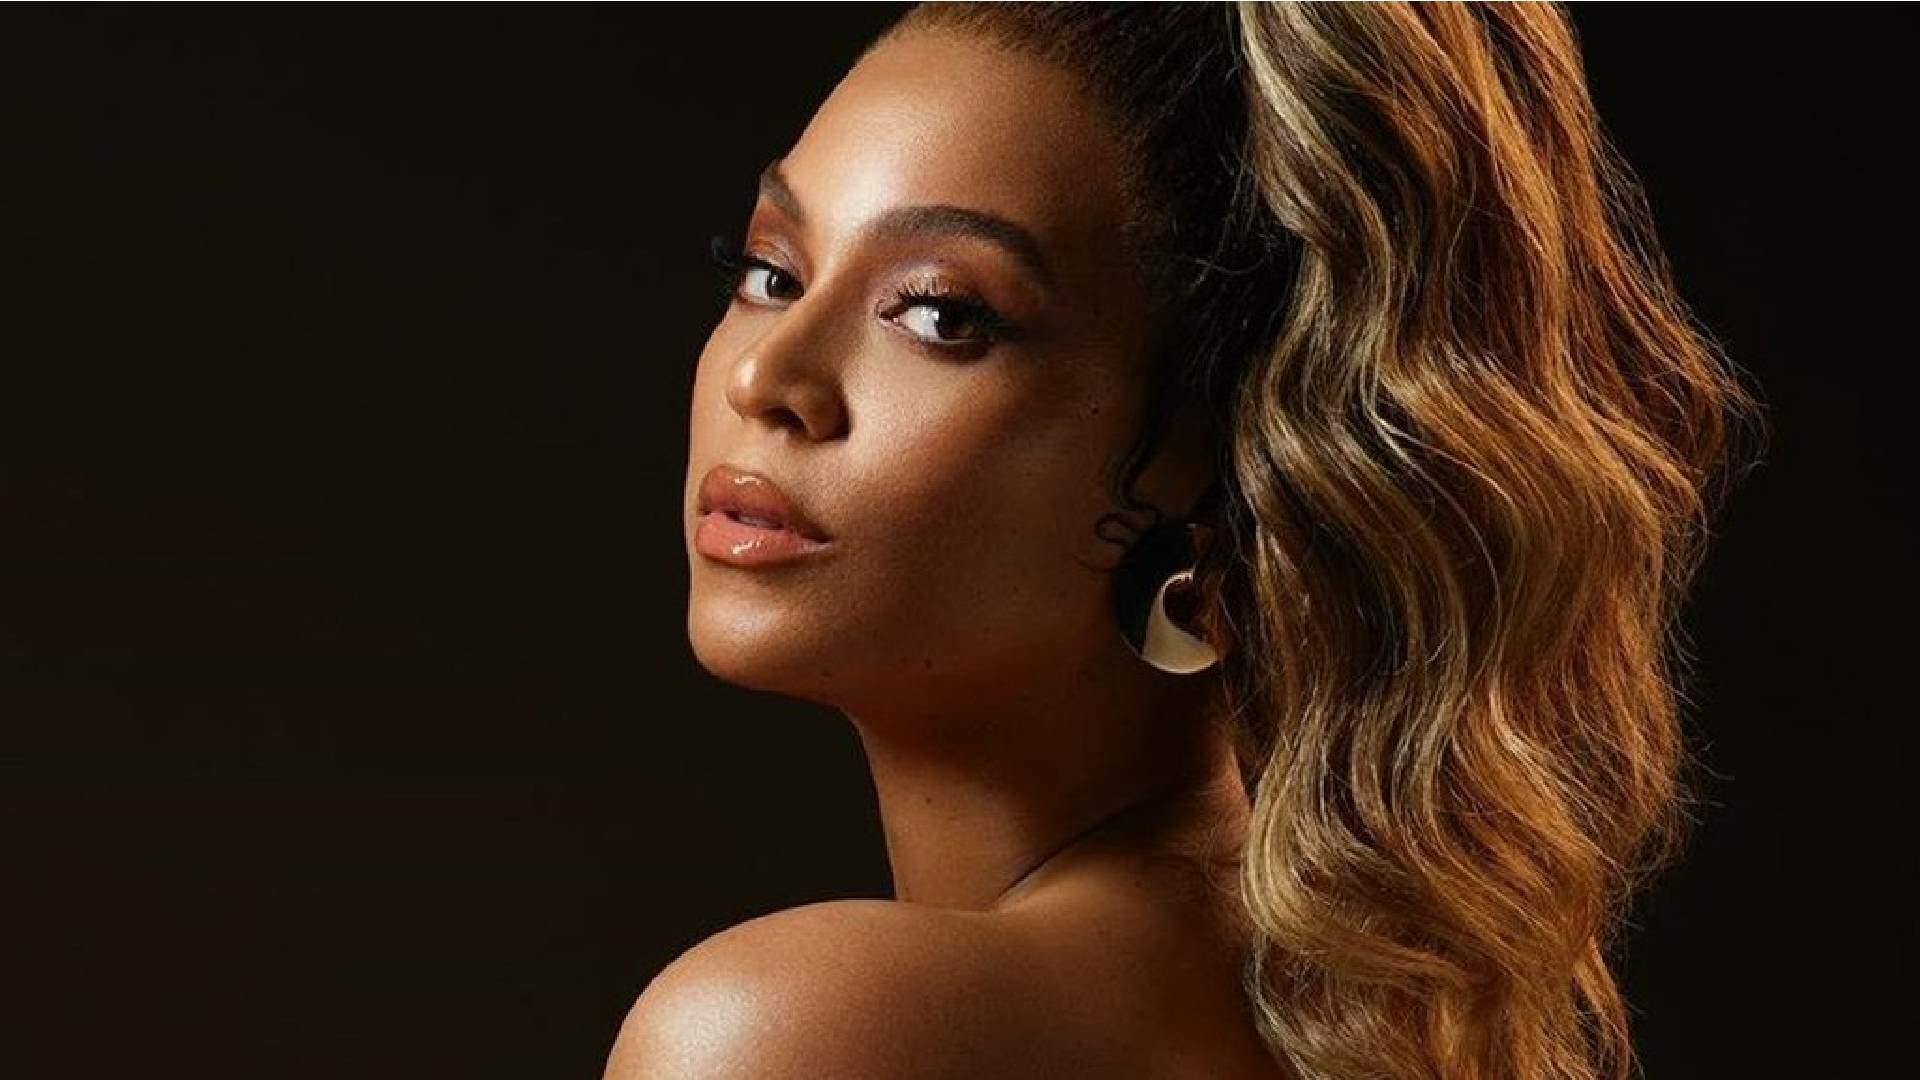 O que esperar do novo álbum de Beyoncé? Site expõe informações sigilosas e deixa fãs ansiosos